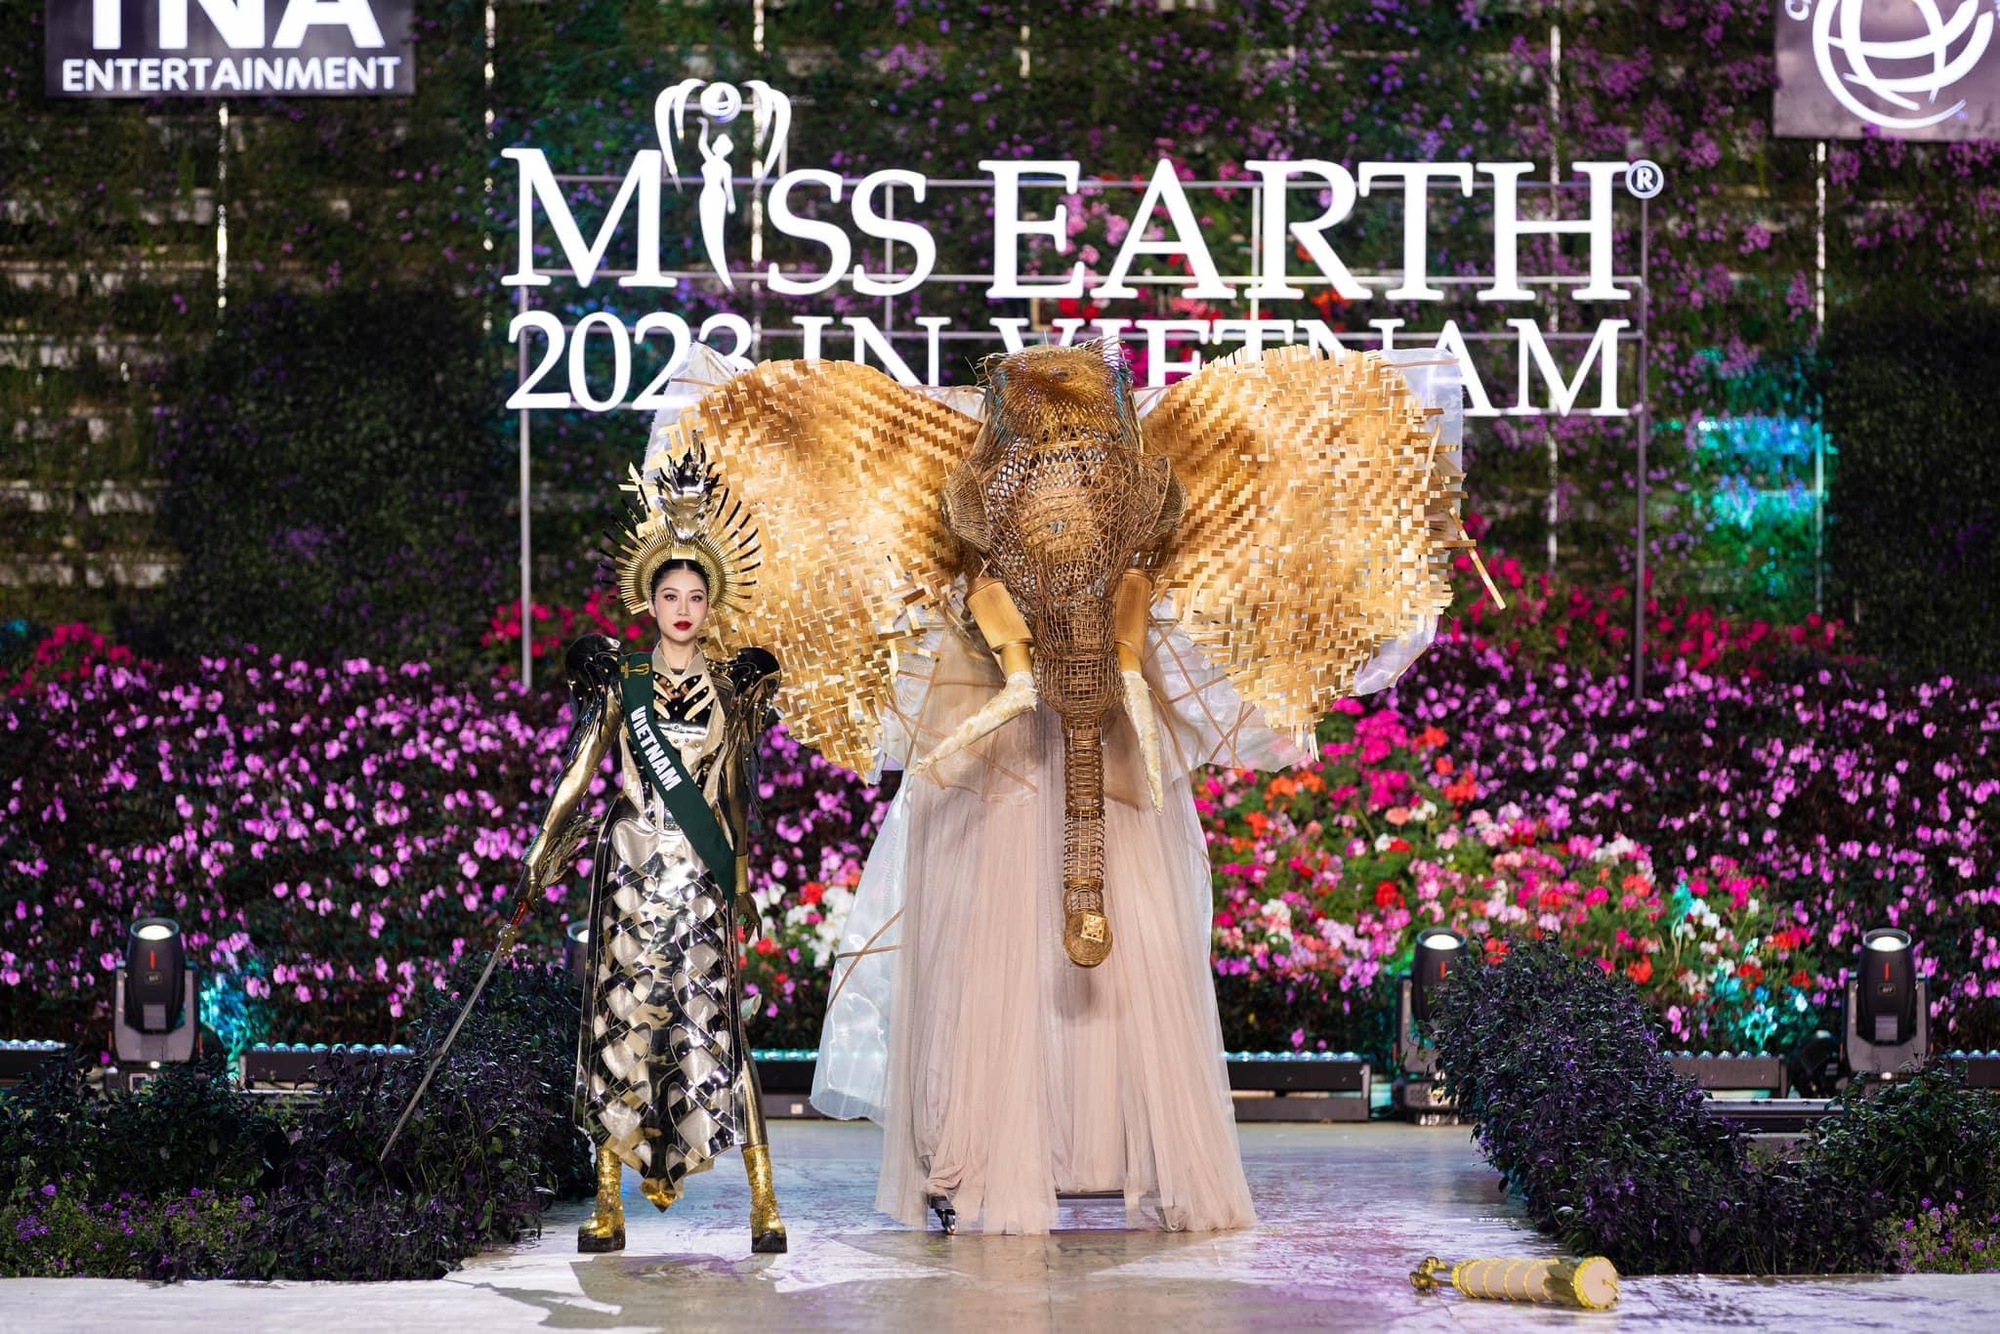 Bán kết Miss Earth 2023: Thi bikini dưới thời tiết 15 độ, trang phục đầu voi của Lan Anh bỗng viral khắp MXH- Ảnh 5.